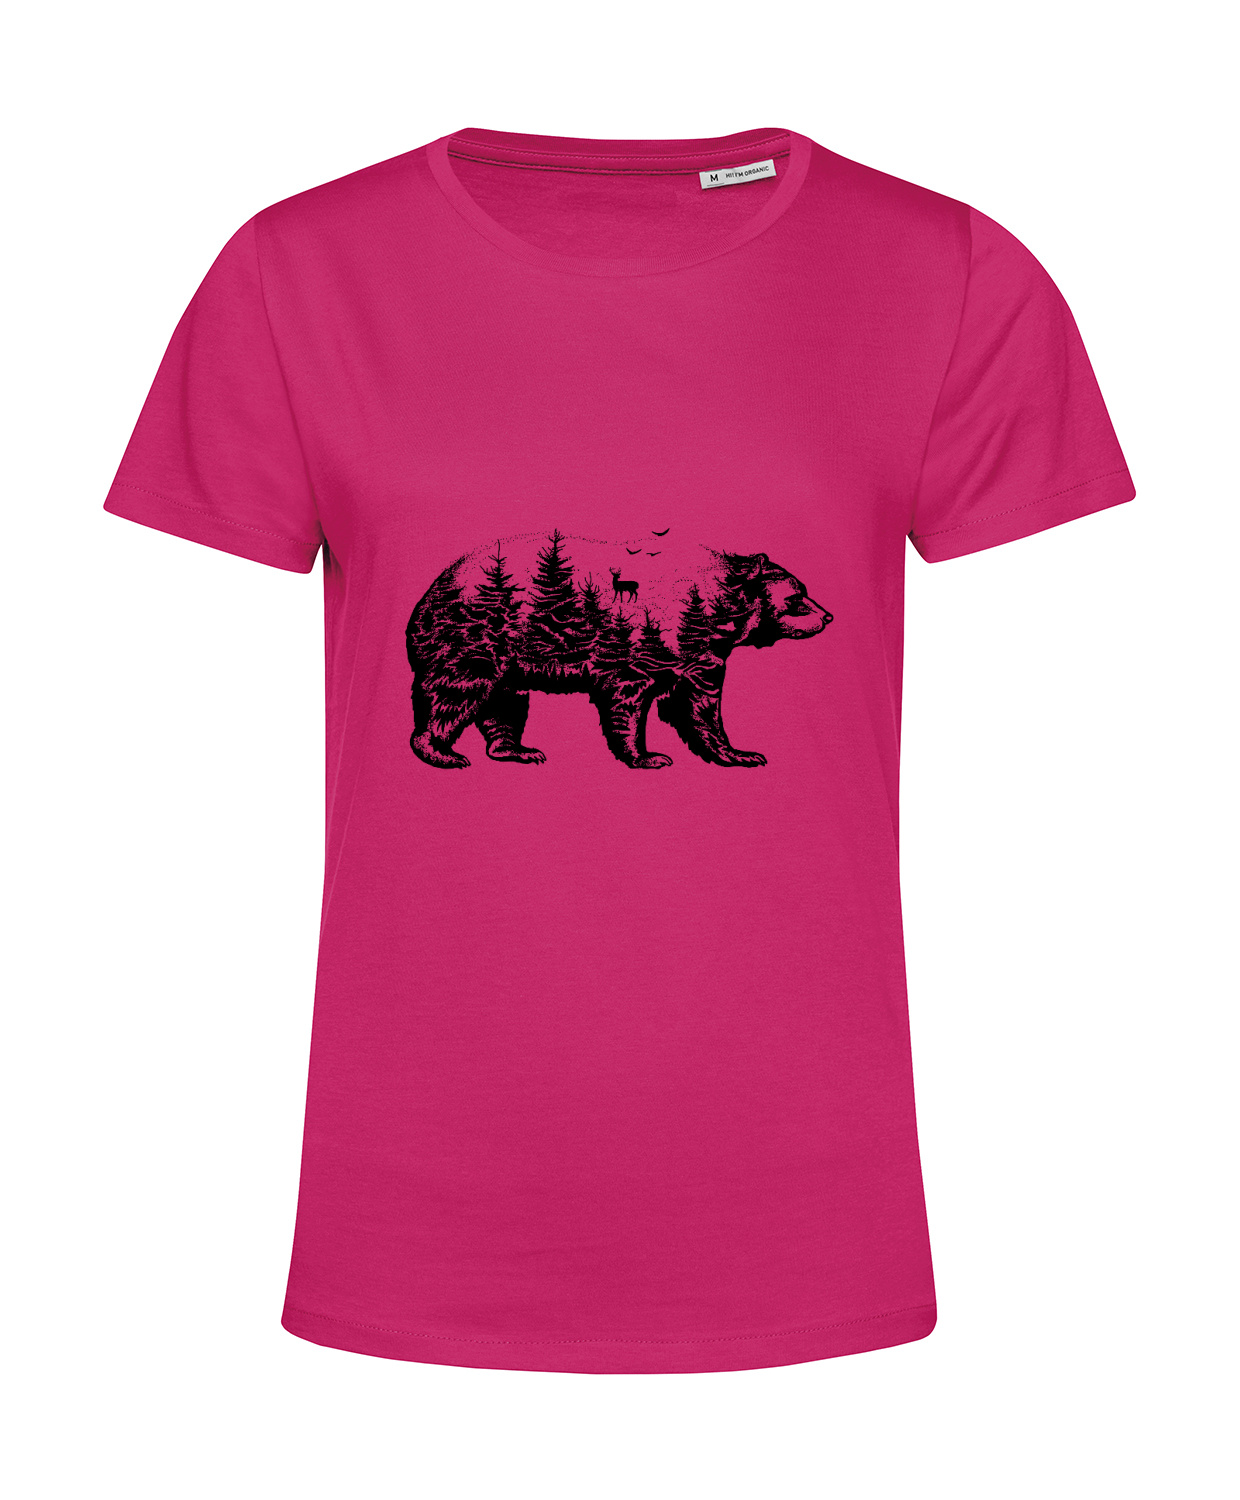 Nachhaltiges T-Shirt Damen Wald im Bär Collage